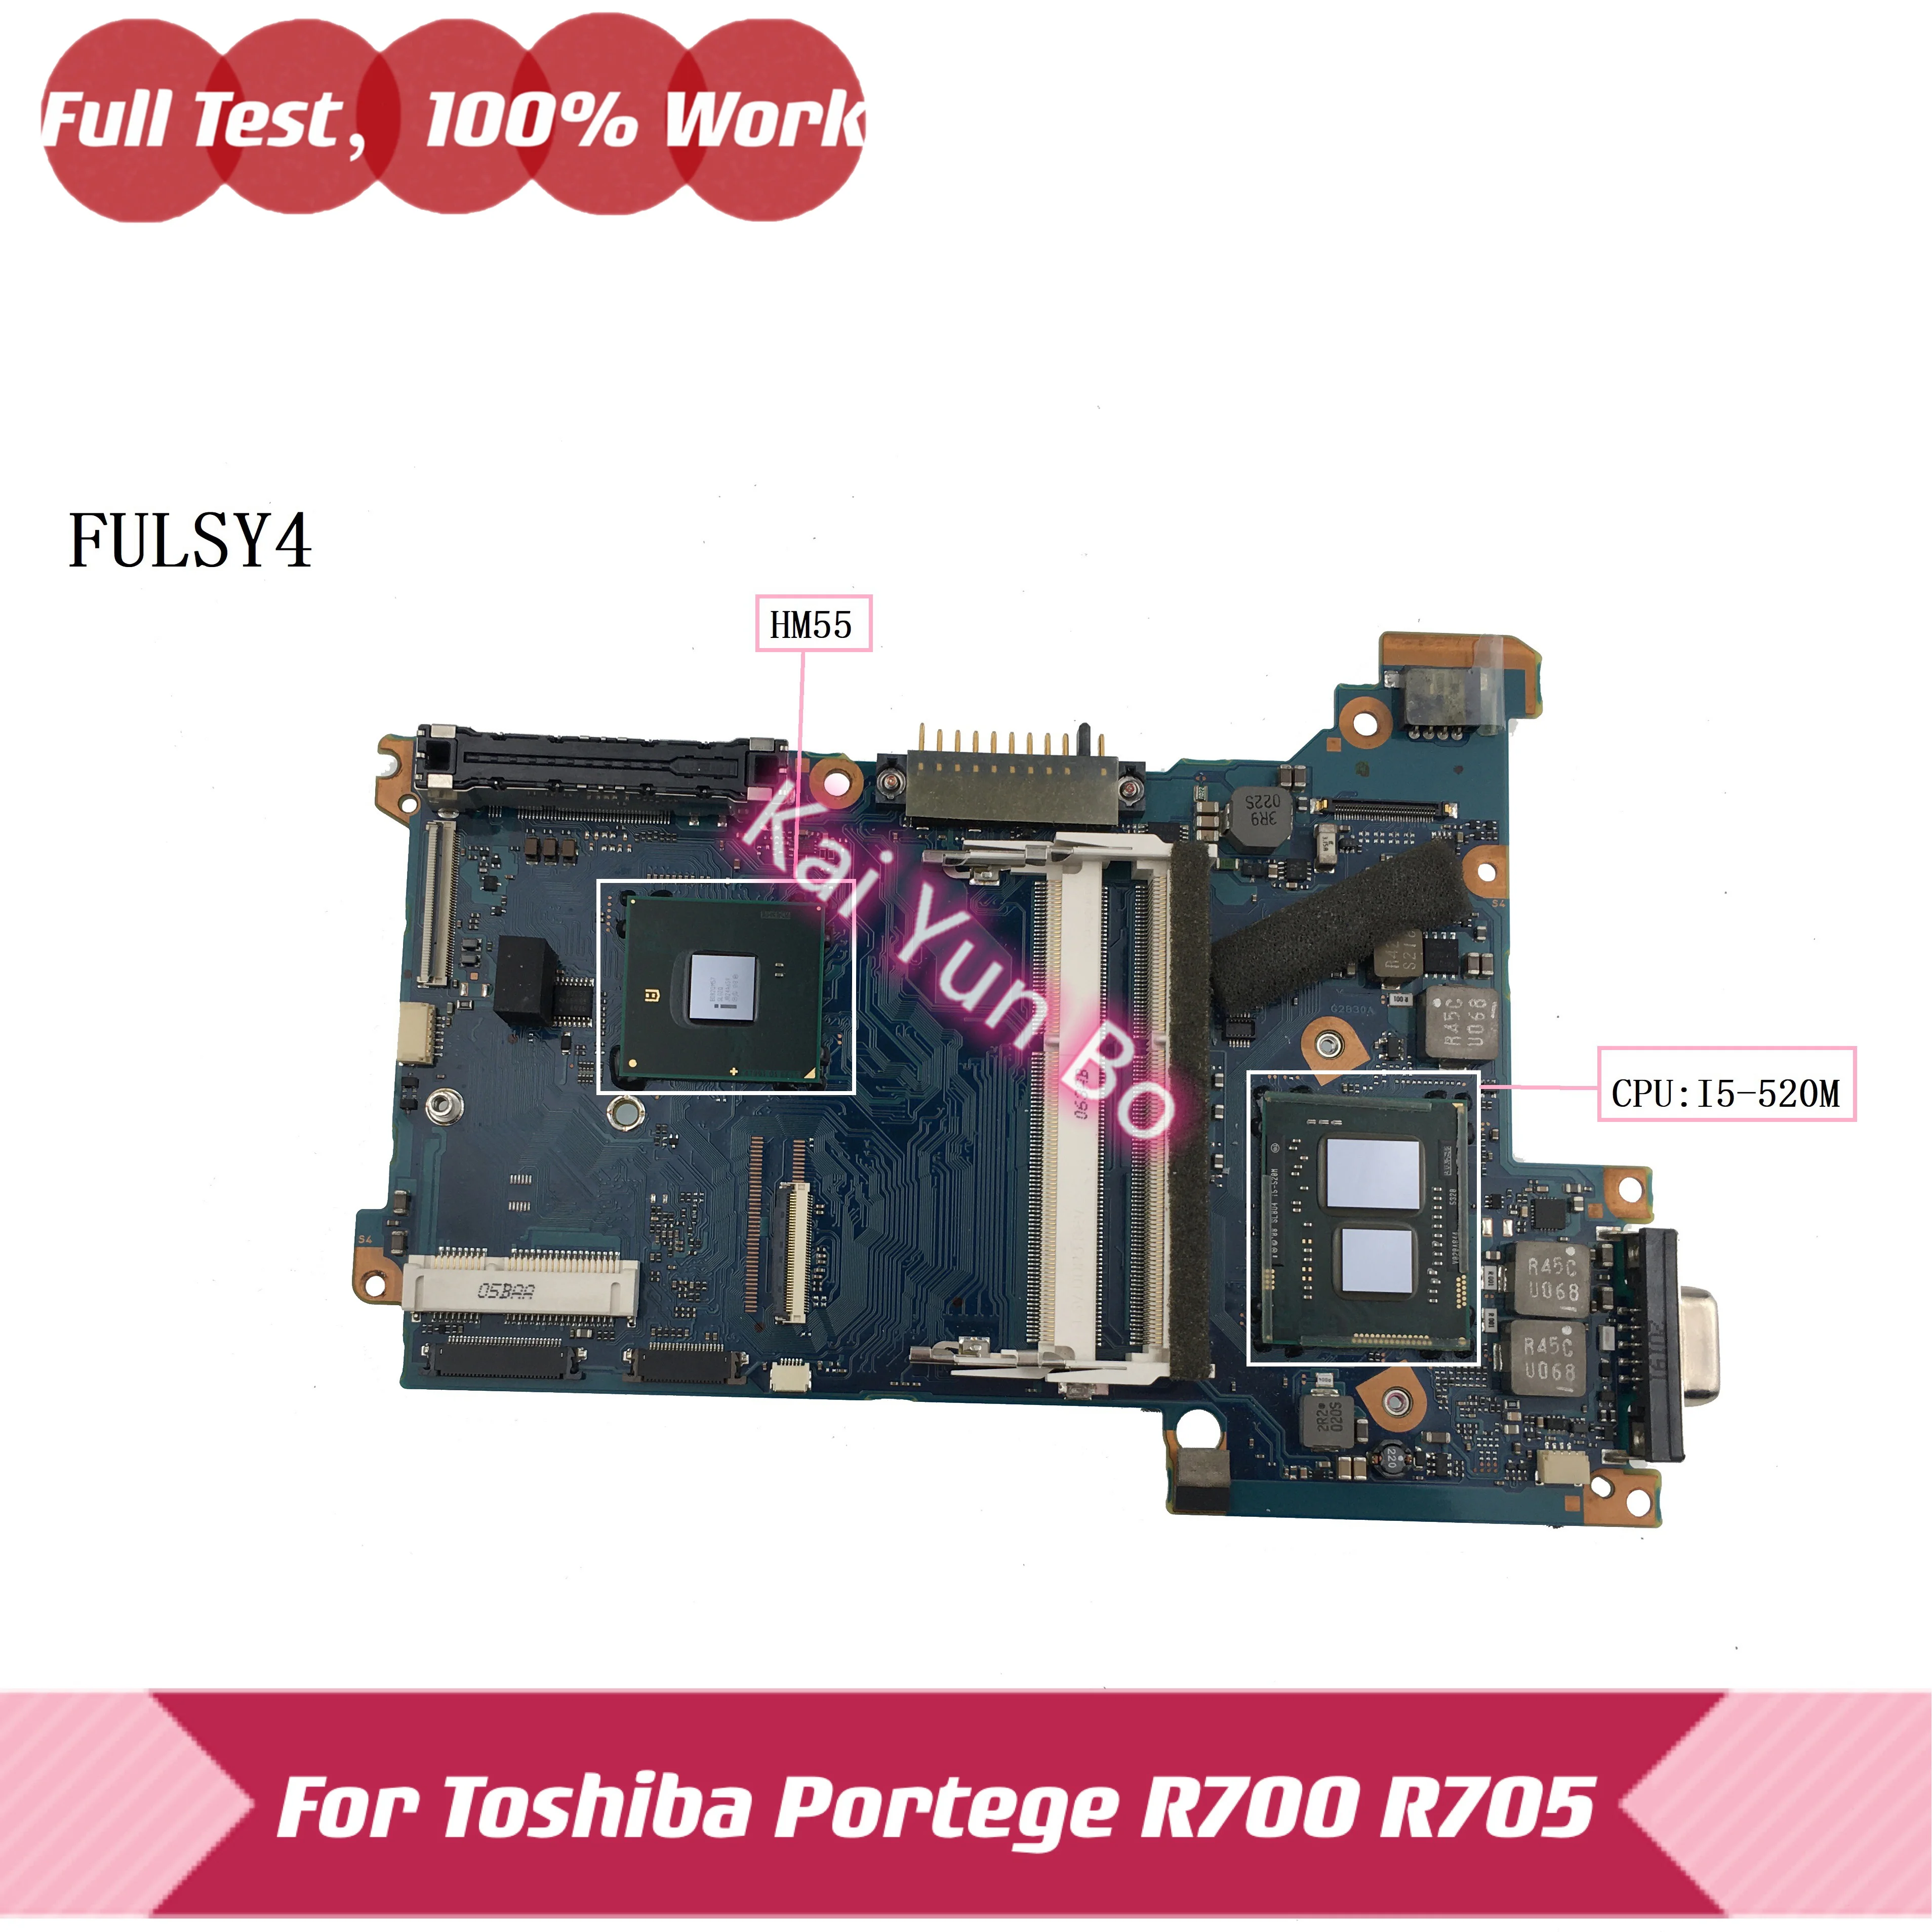   FULSY4 A2830A   Toshiba Portege R700 R705   i5-520M HM55 DDR3 100%  